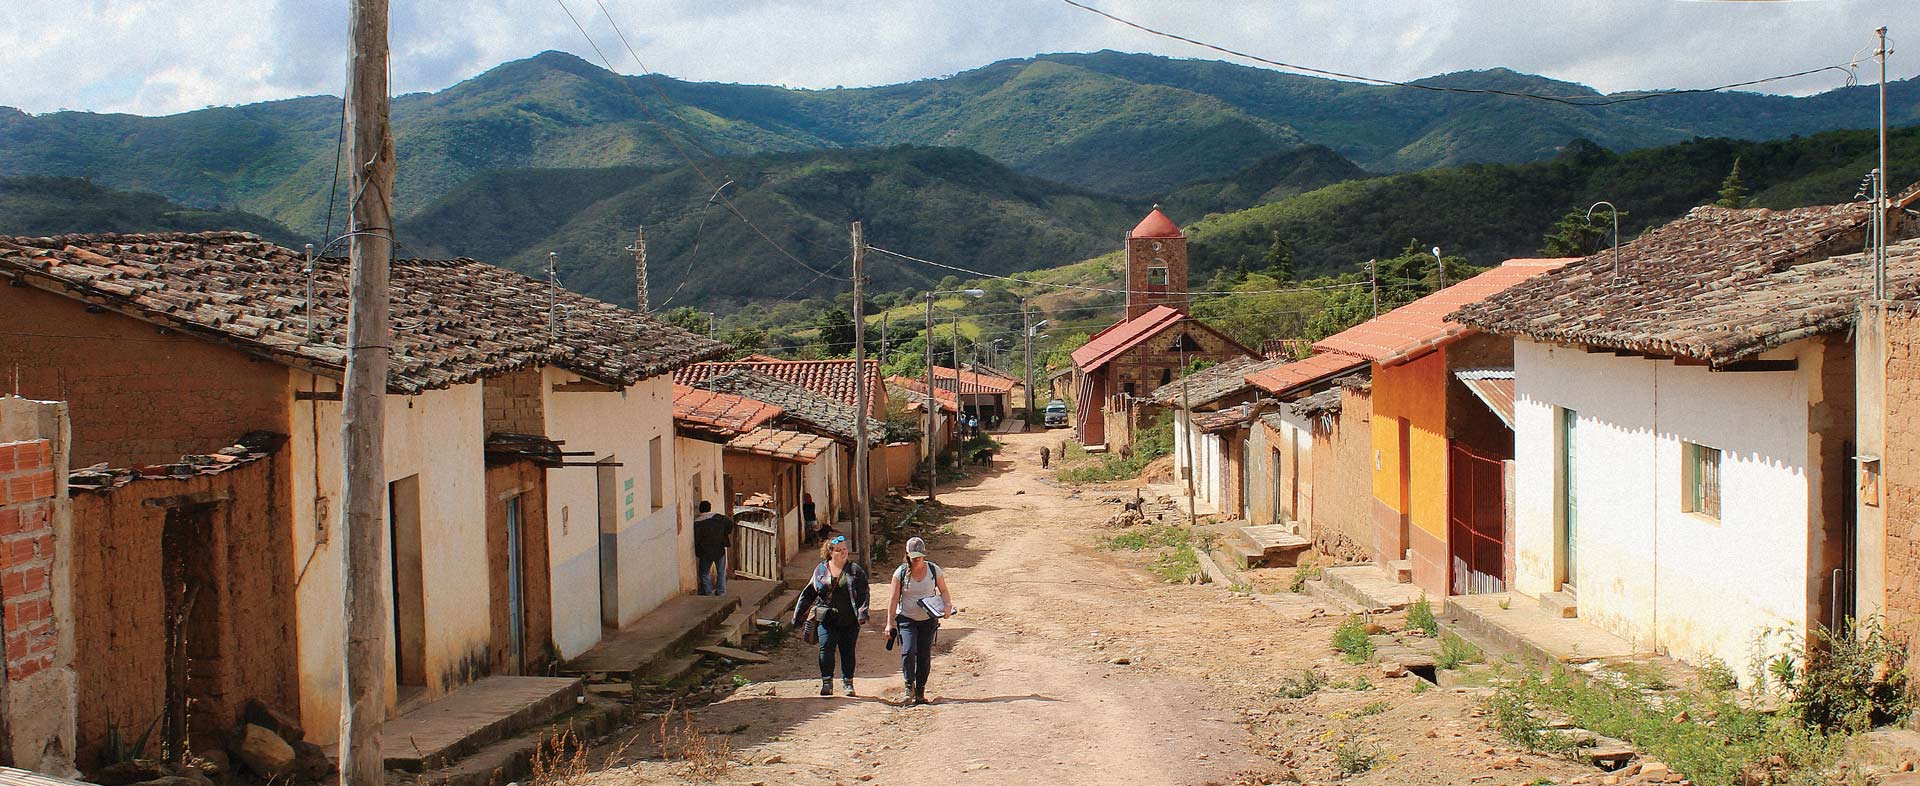 2 people walking through a village